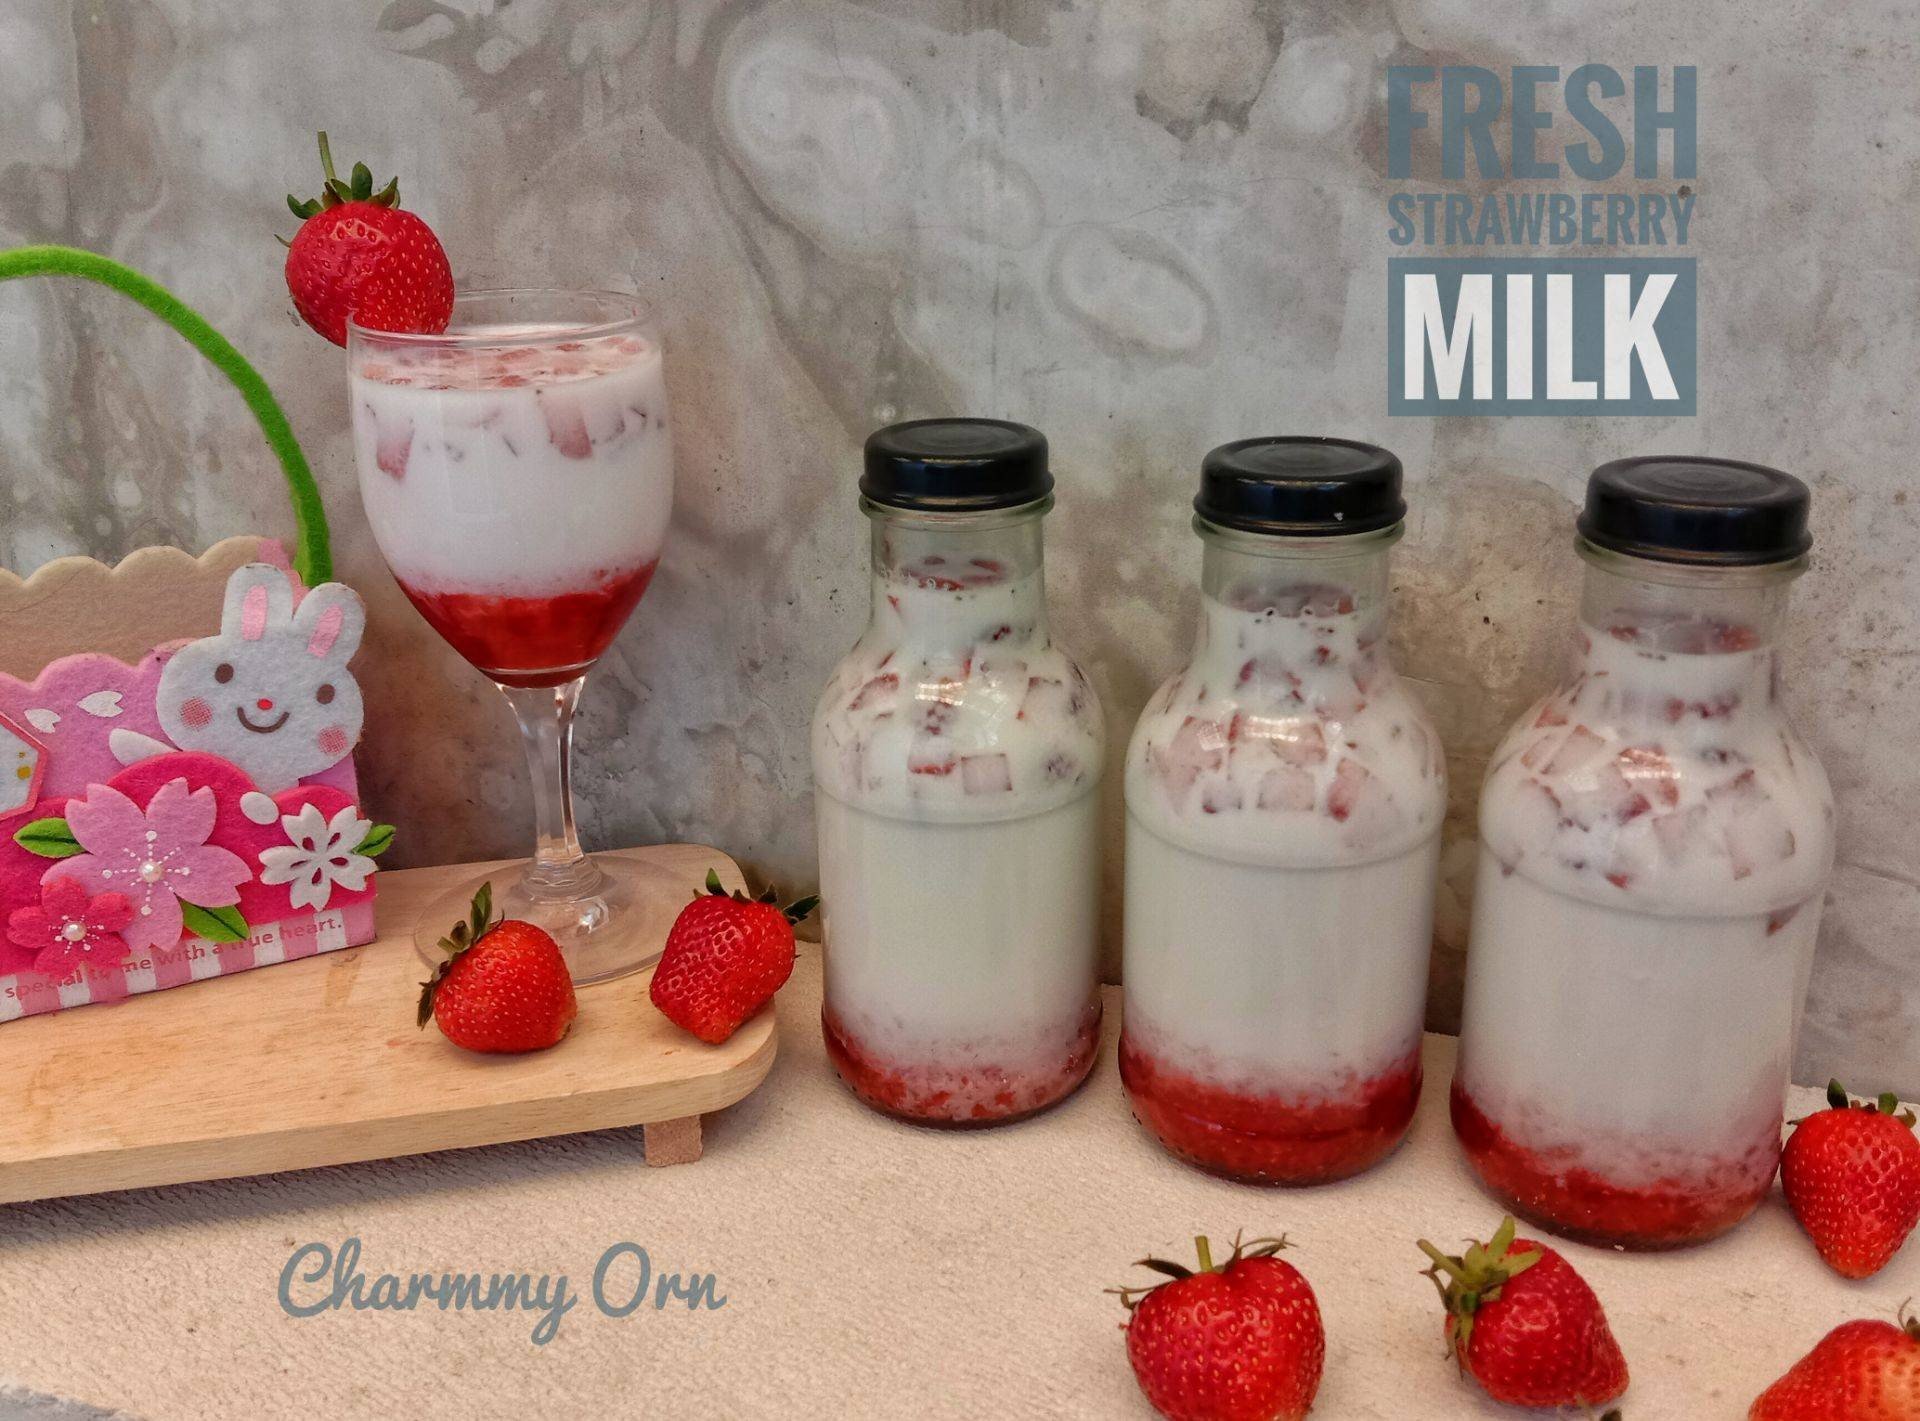 สูตร นมสตรอว์เบอร์รี่ [Fresh Strawberry Milk] พร้อมวิธีทำโดย Charmmy Orn